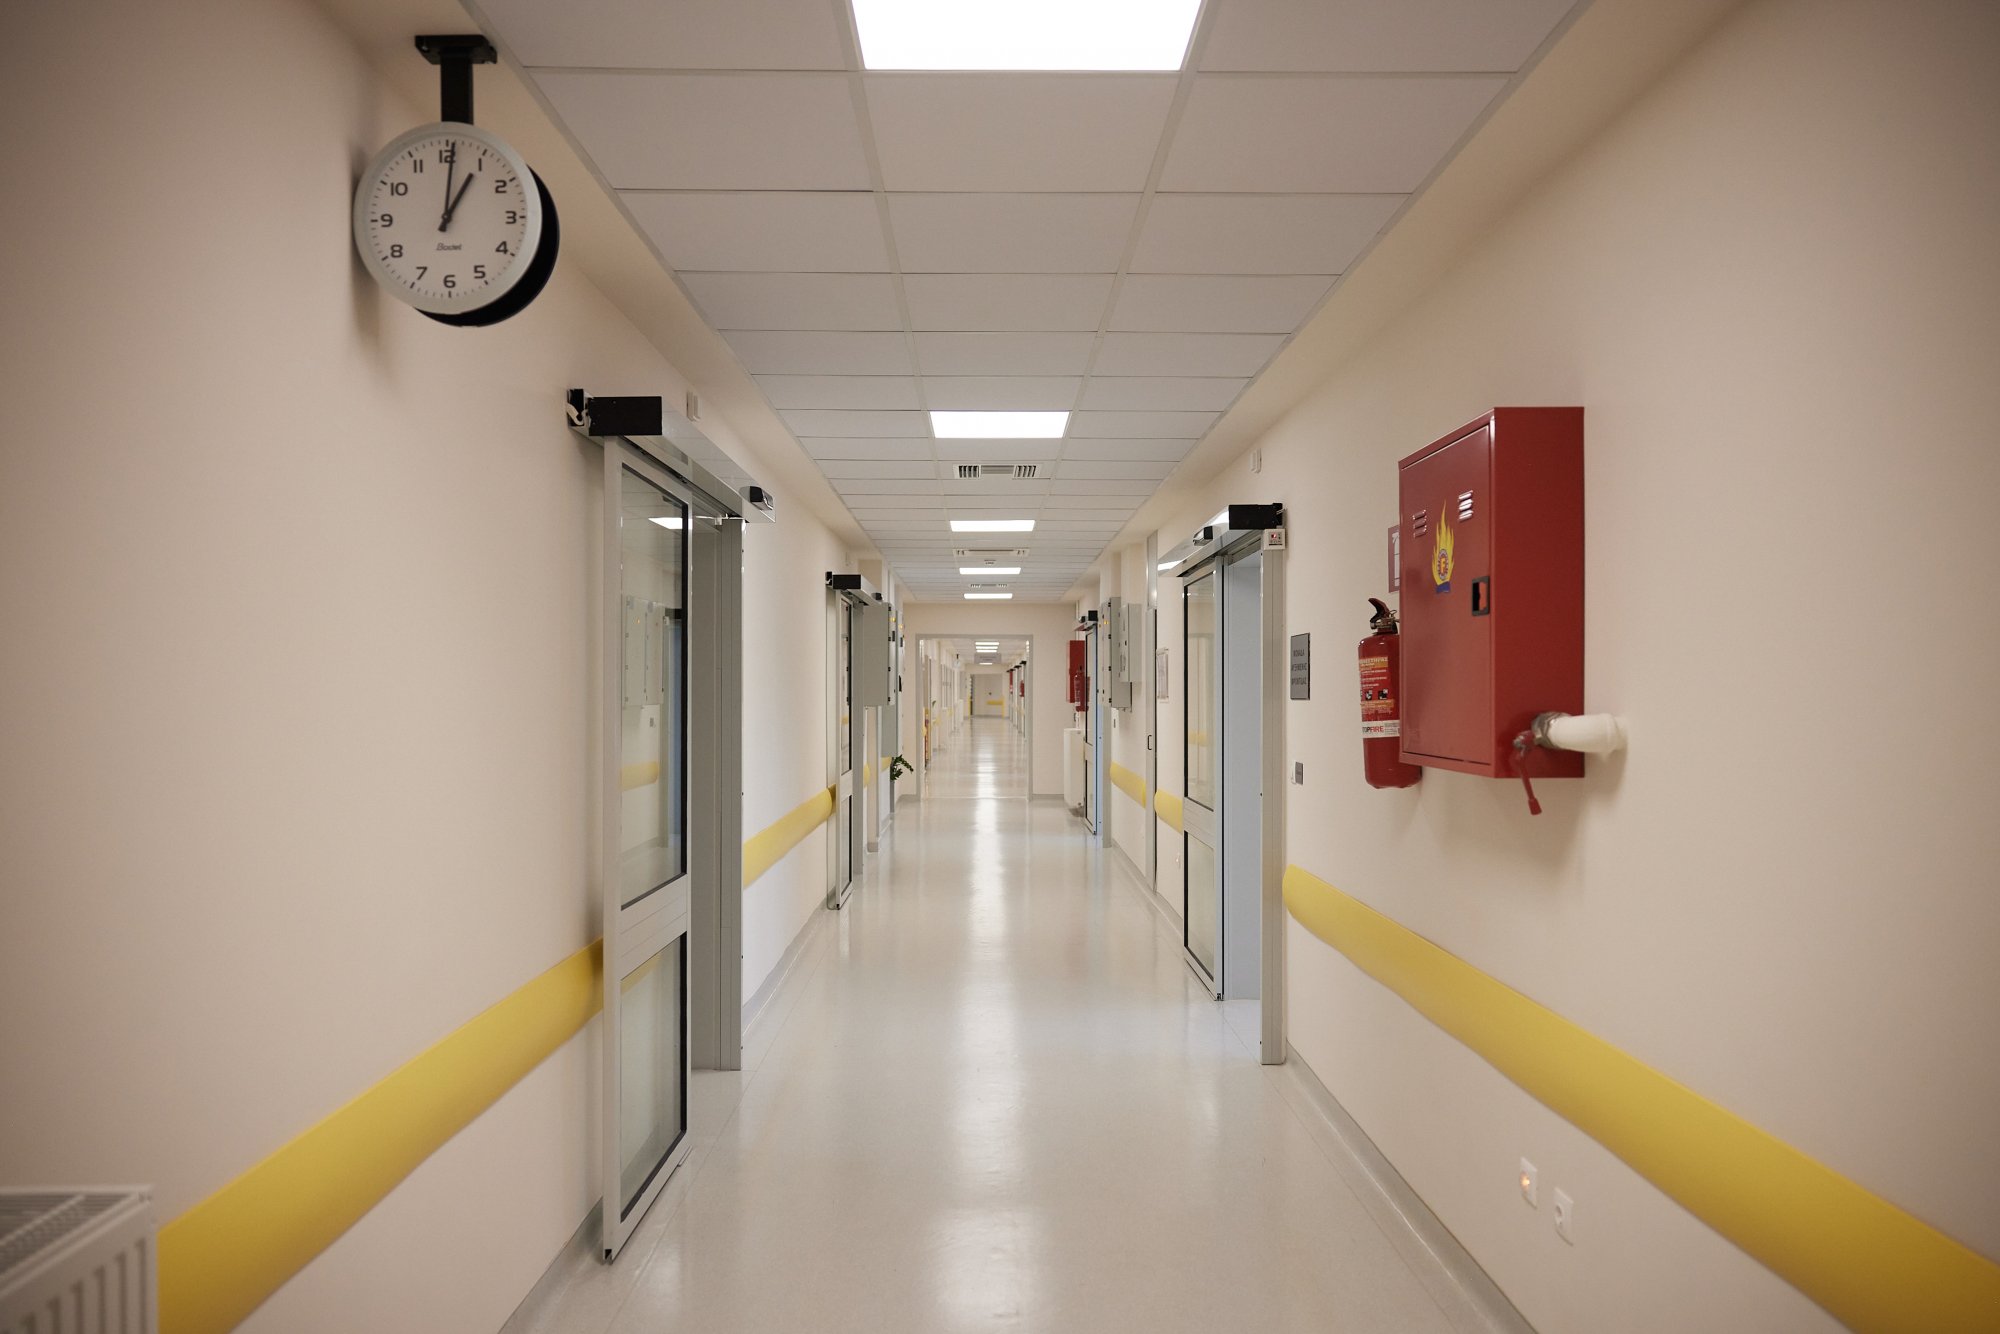 Ζάκυνθος: Άρπαξαν παιδί από το νοσοκομείο – Συνελήφθη η νοσηλεύτρια βάρδιας